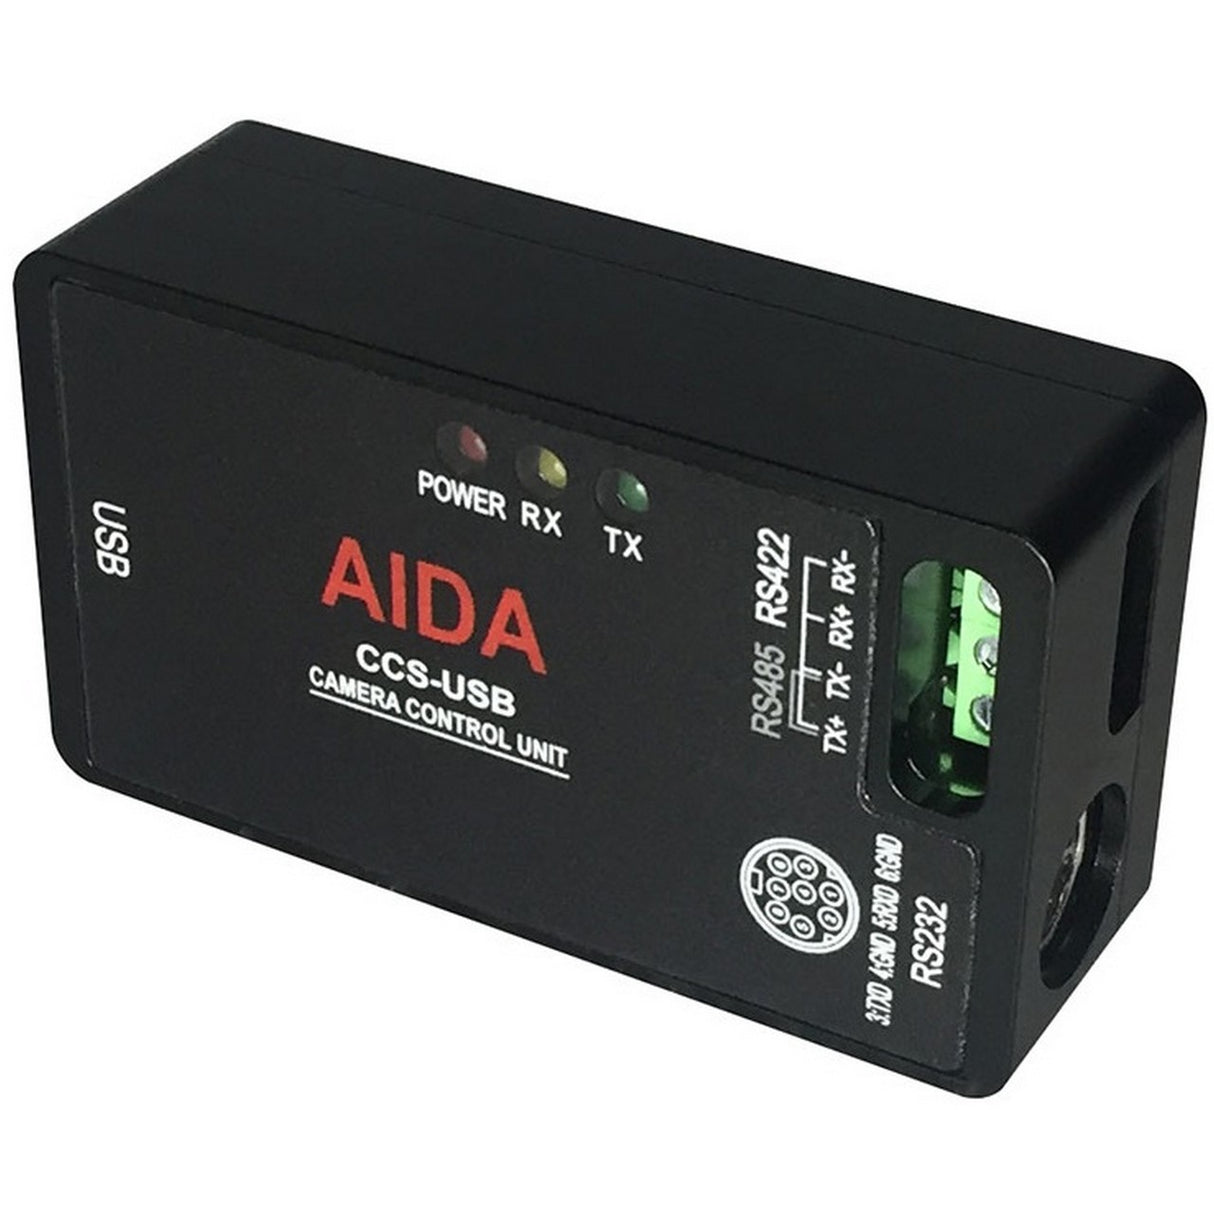 Aida CCS-USB | VISCA Camera Control Unit and Software